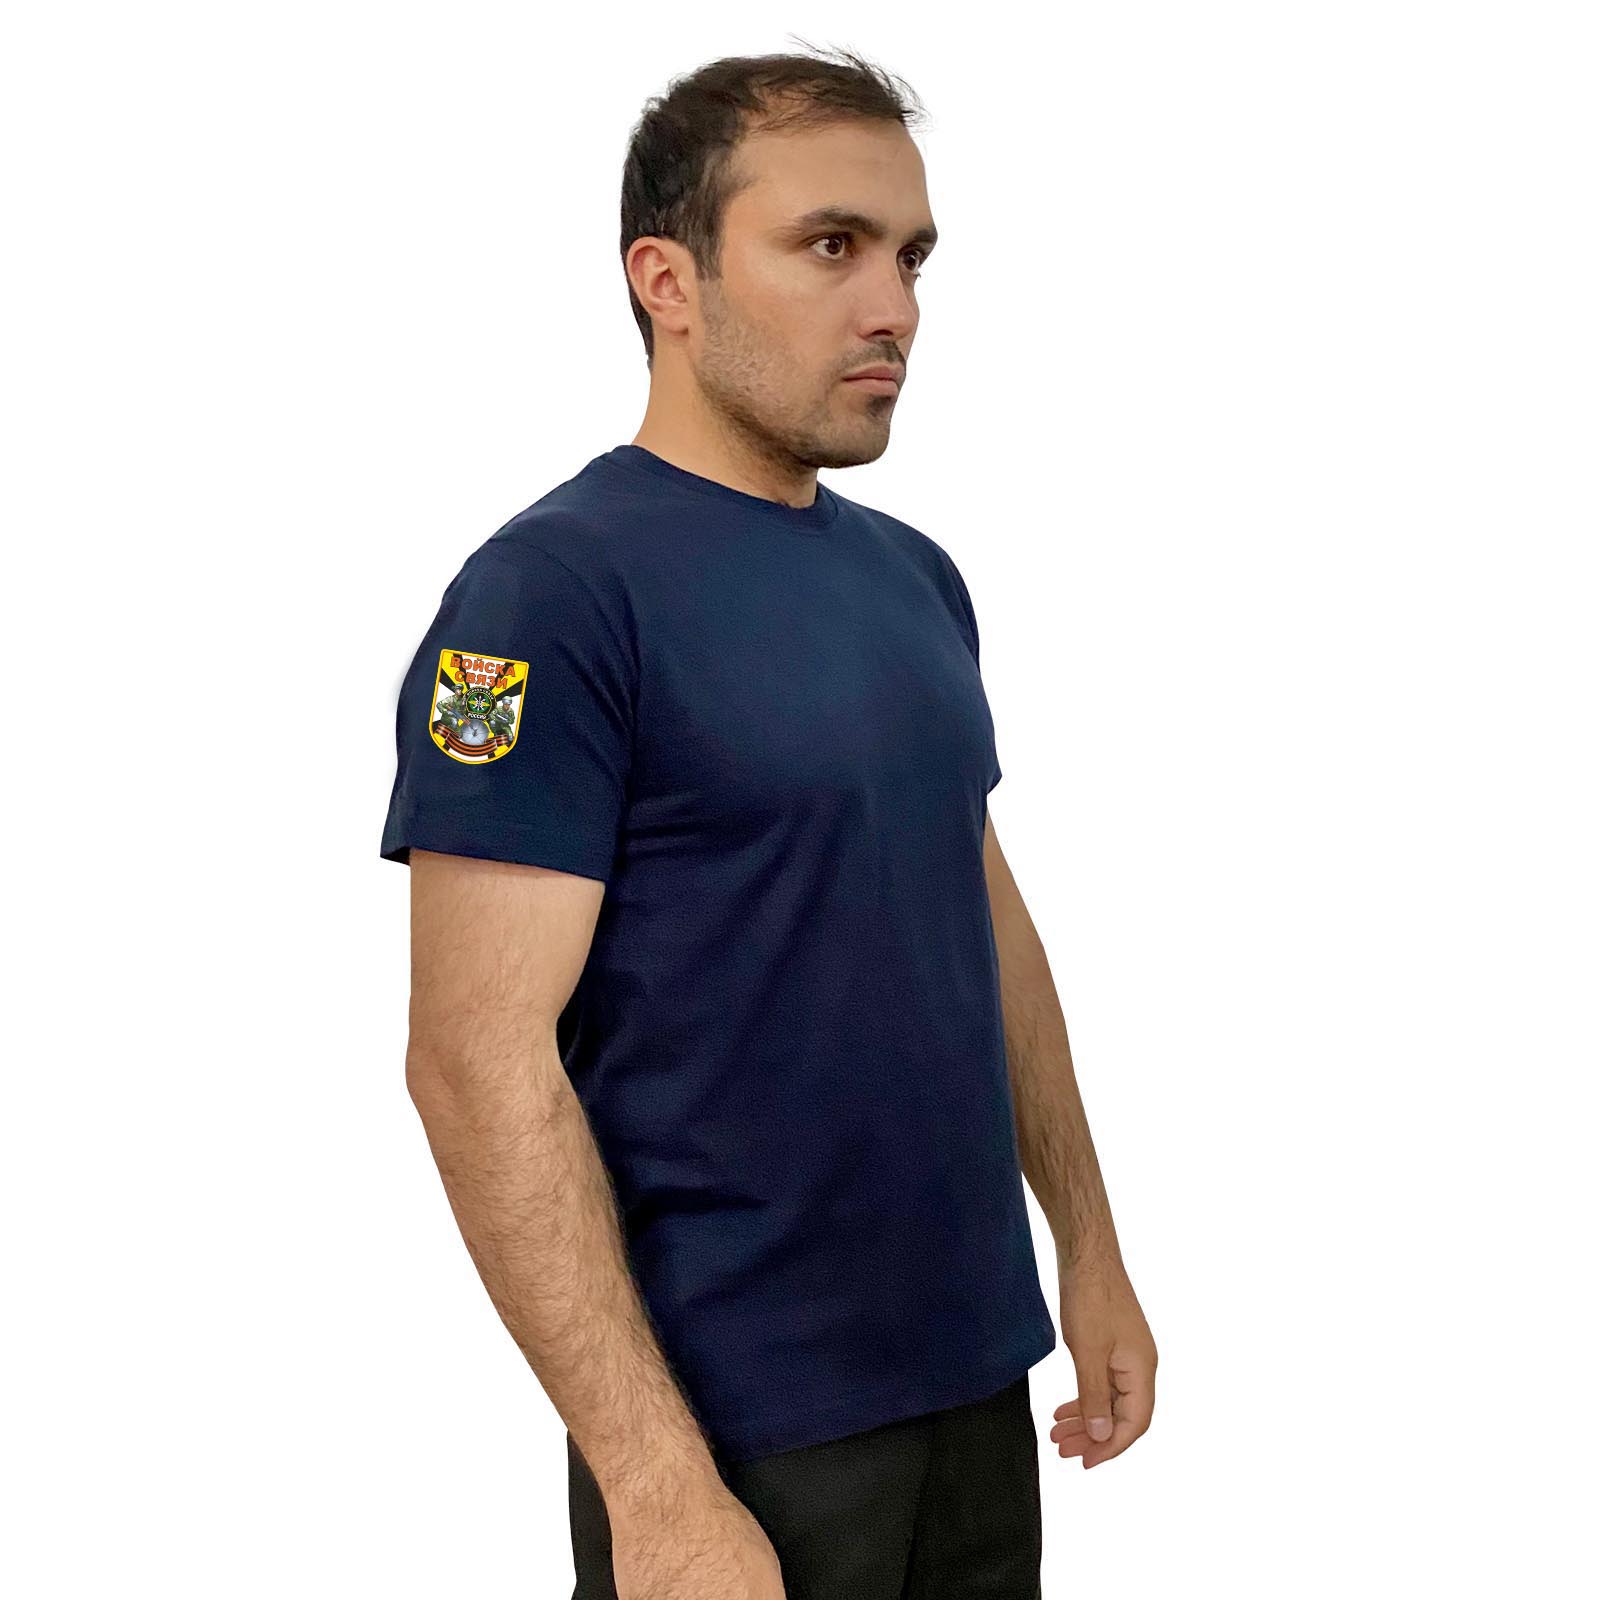 Купить стильную темно-синюю футболку с термотрансфером Войска Связи выгодно